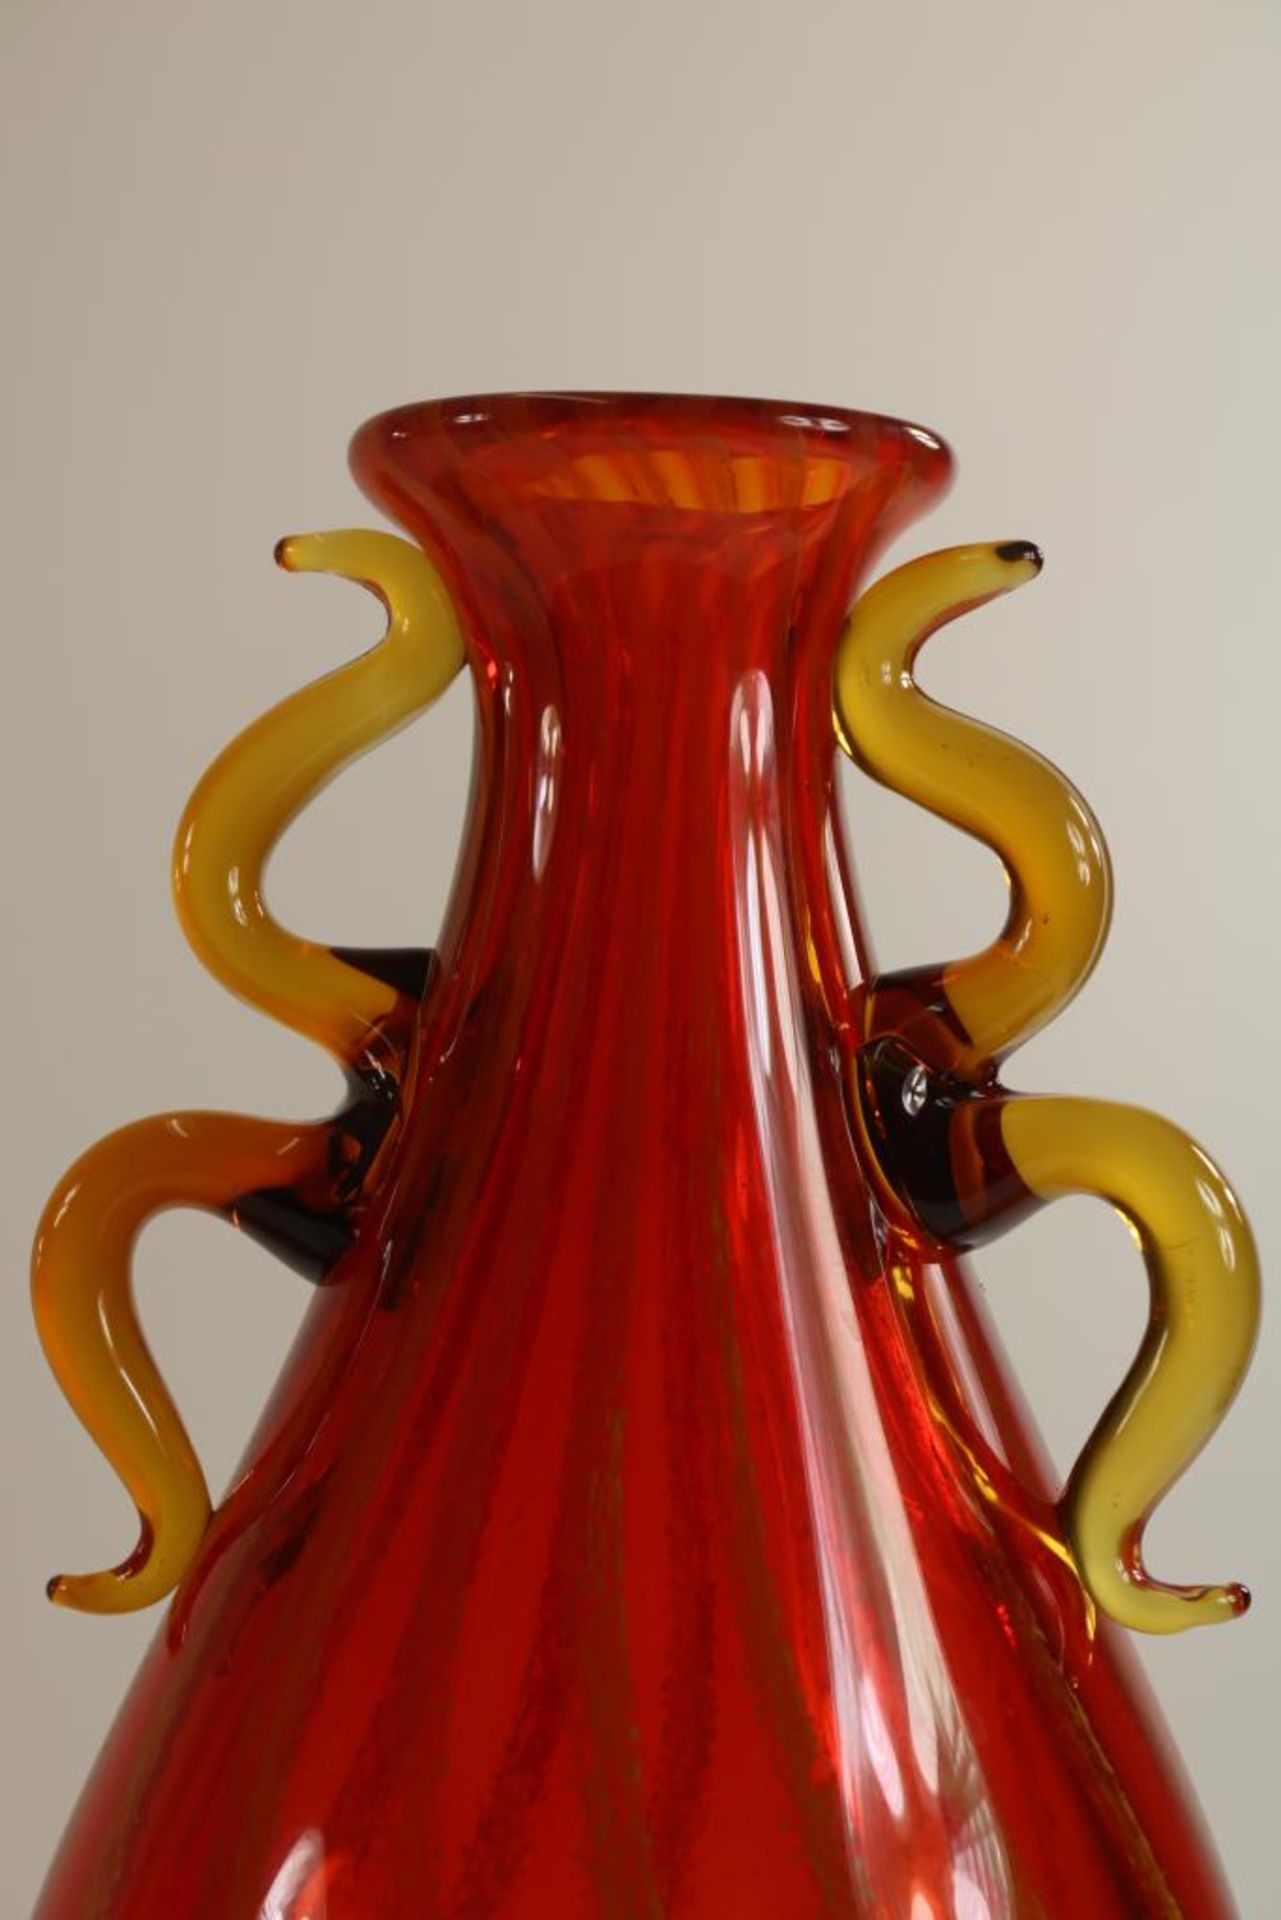 Rood glazen balustervormige vaas - Bild 3 aus 3